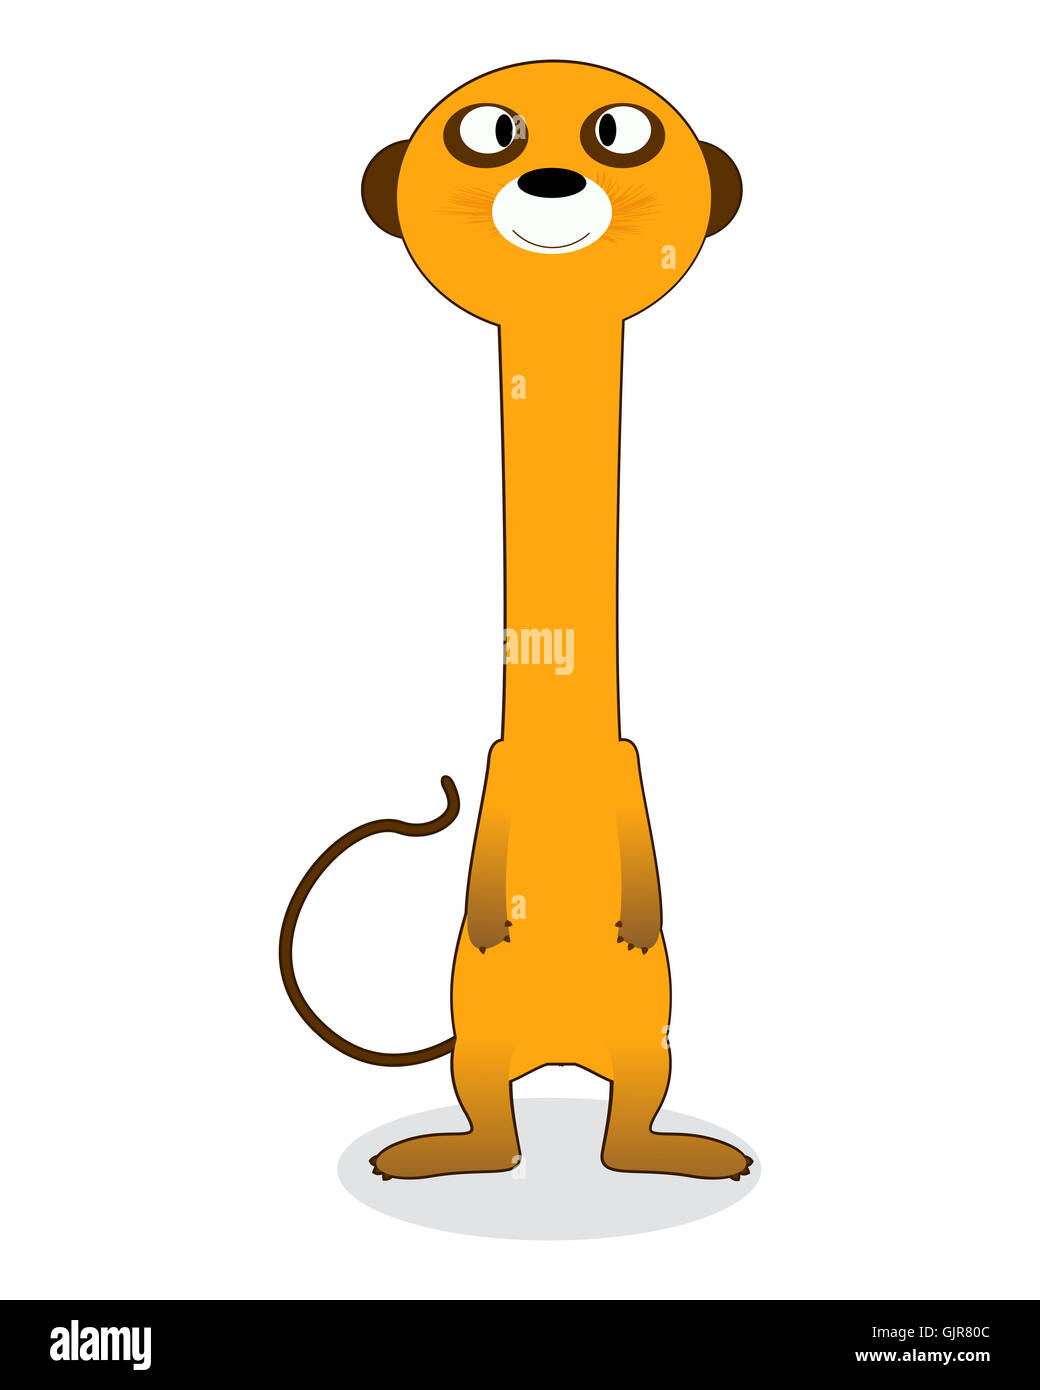 Clip art meerkat Stock Photo